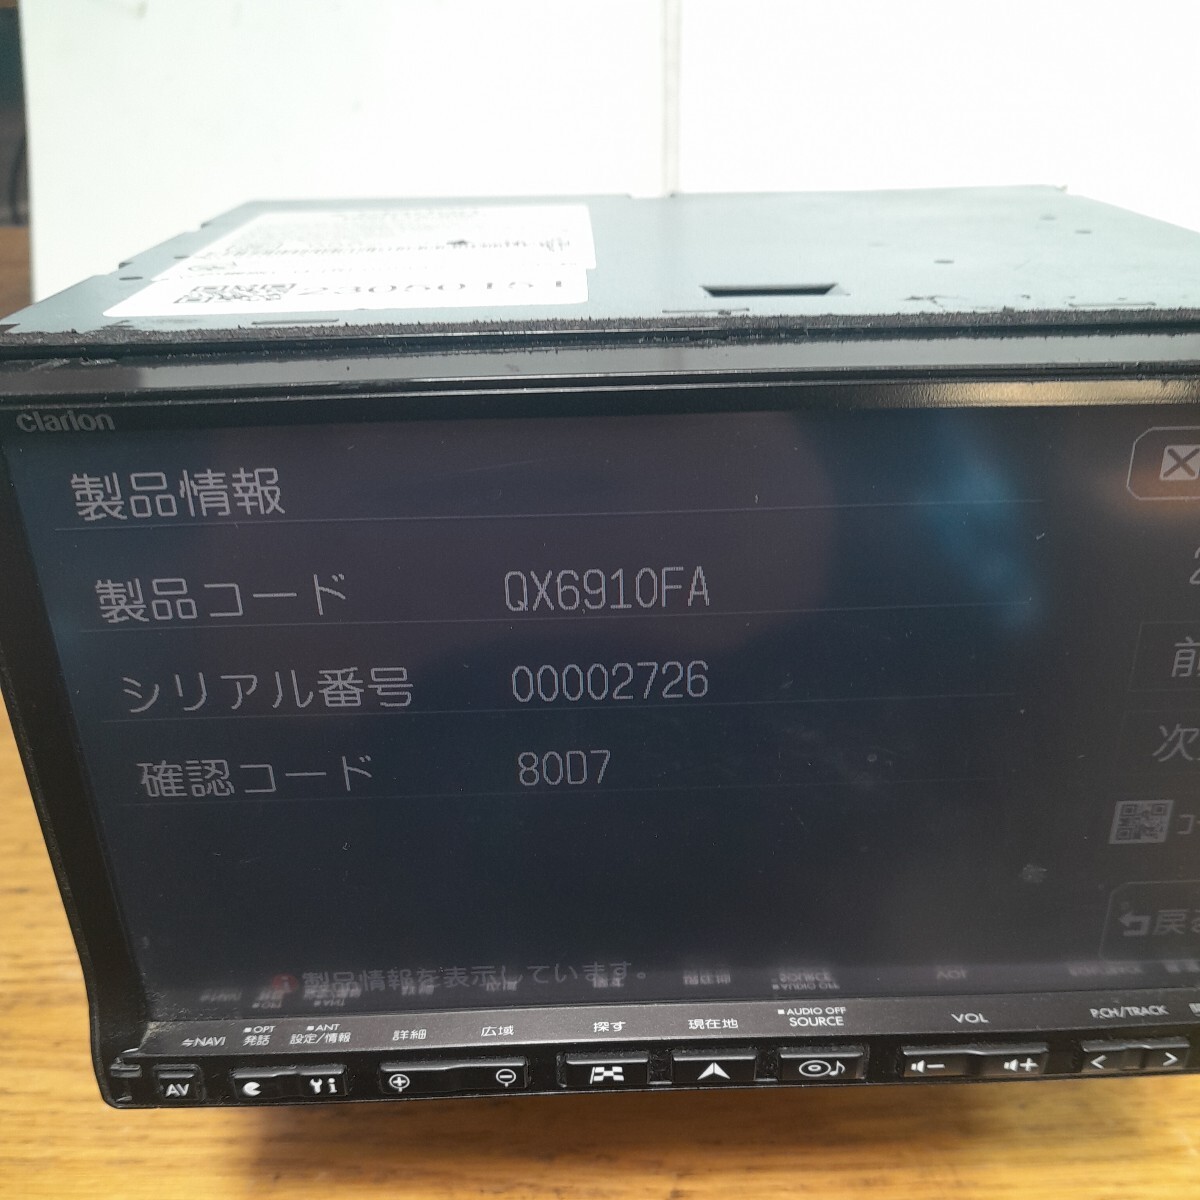  Subaru оригинальный Clarion * navi GCX809 карта данные Road Explorer HDD7.0( контрольный номер :23050151)